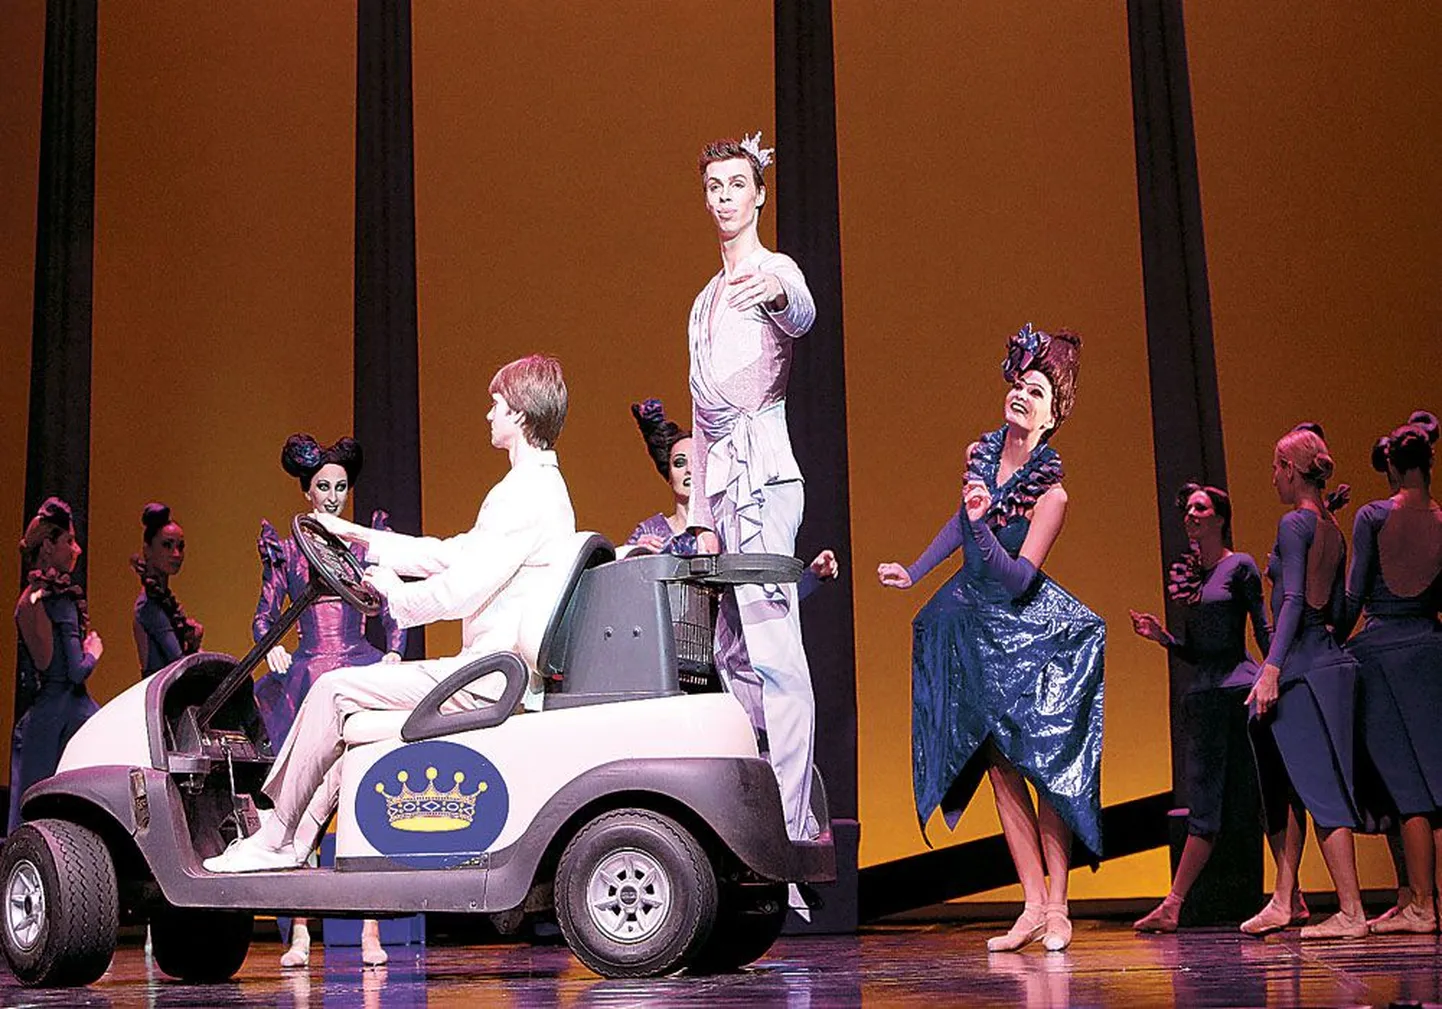 Принц (Евгений Гриб), окруженный толпой претенденток на хрустальную туфельку и королевский трон, появляется на автомобиле — вполне современное решение сцены.